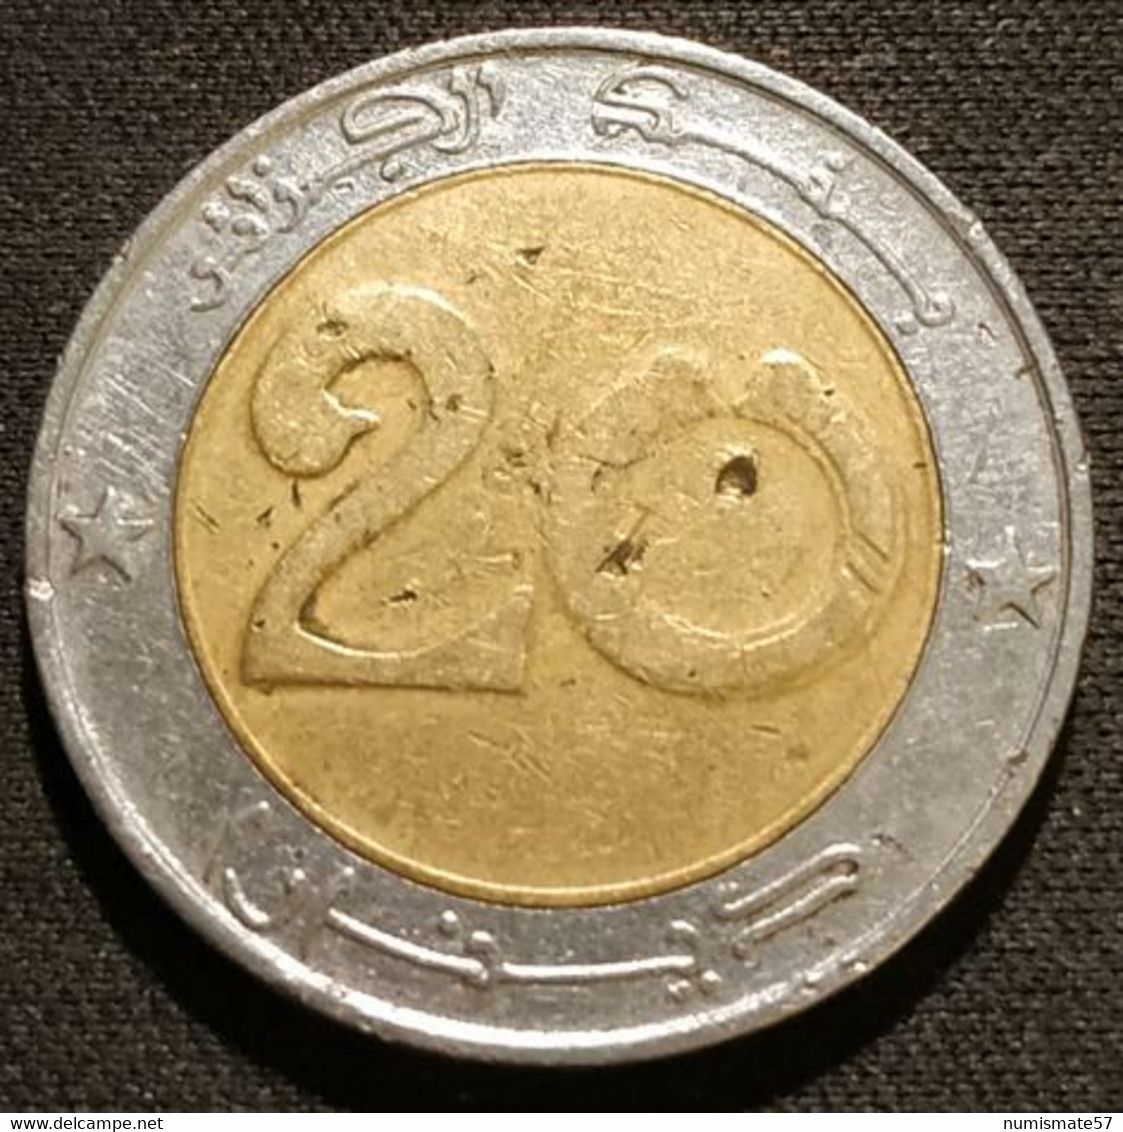 ALGERIE - ALGERIA - 20 DINARS 1996 ( 1416 ) - KM 125 - Lion De L'Atlas - Algérie